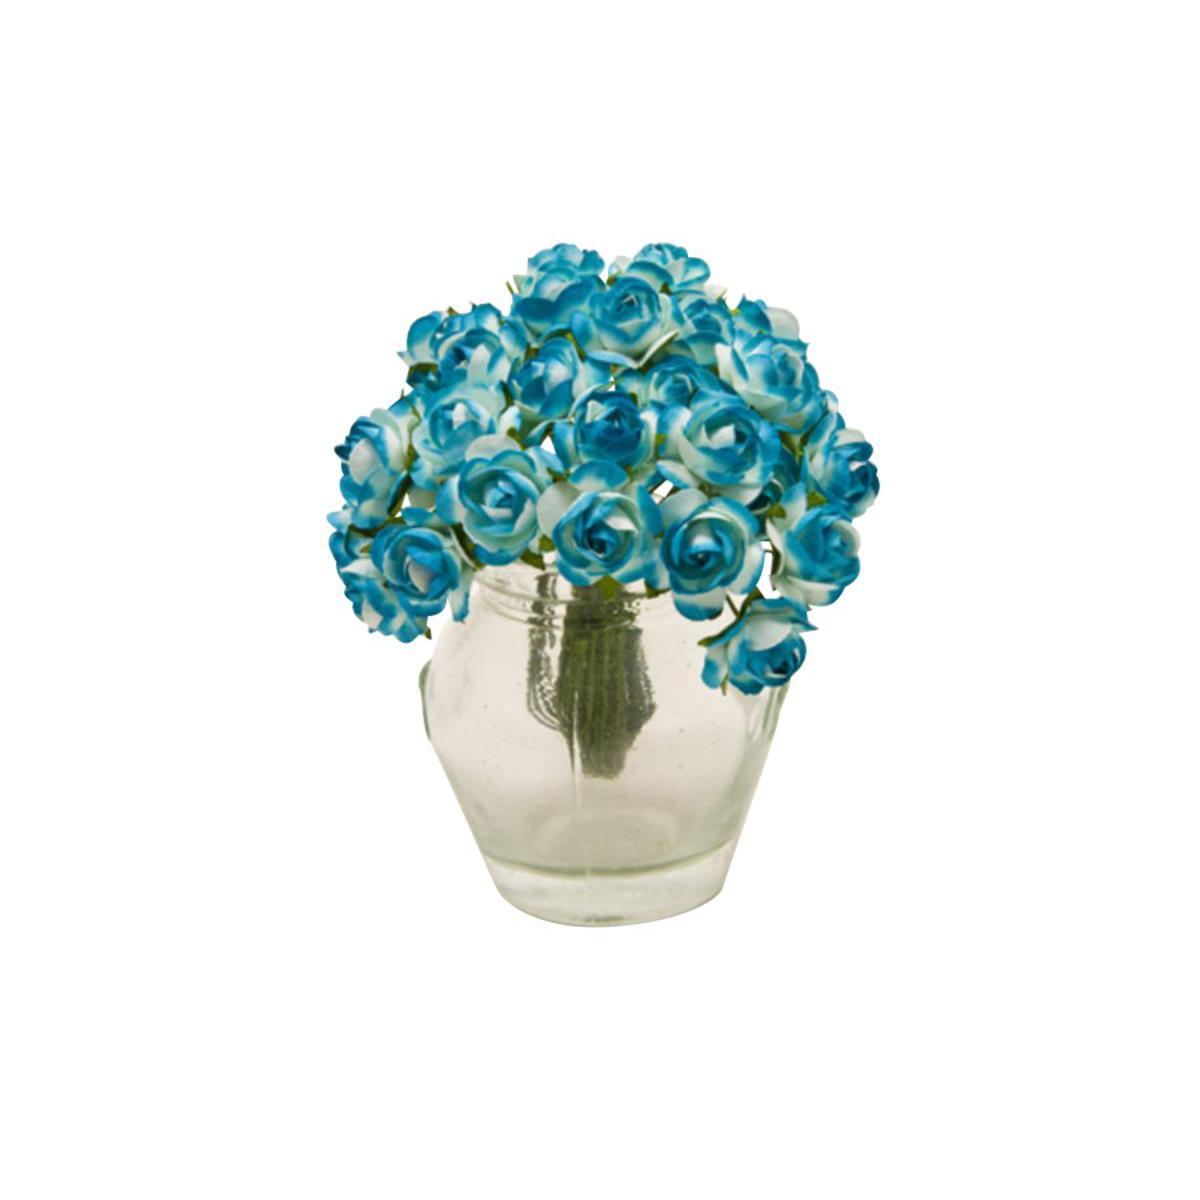 Lot de 36 mini fleurs en papier - Diamètre 1,5 cm - Bleu turquoise